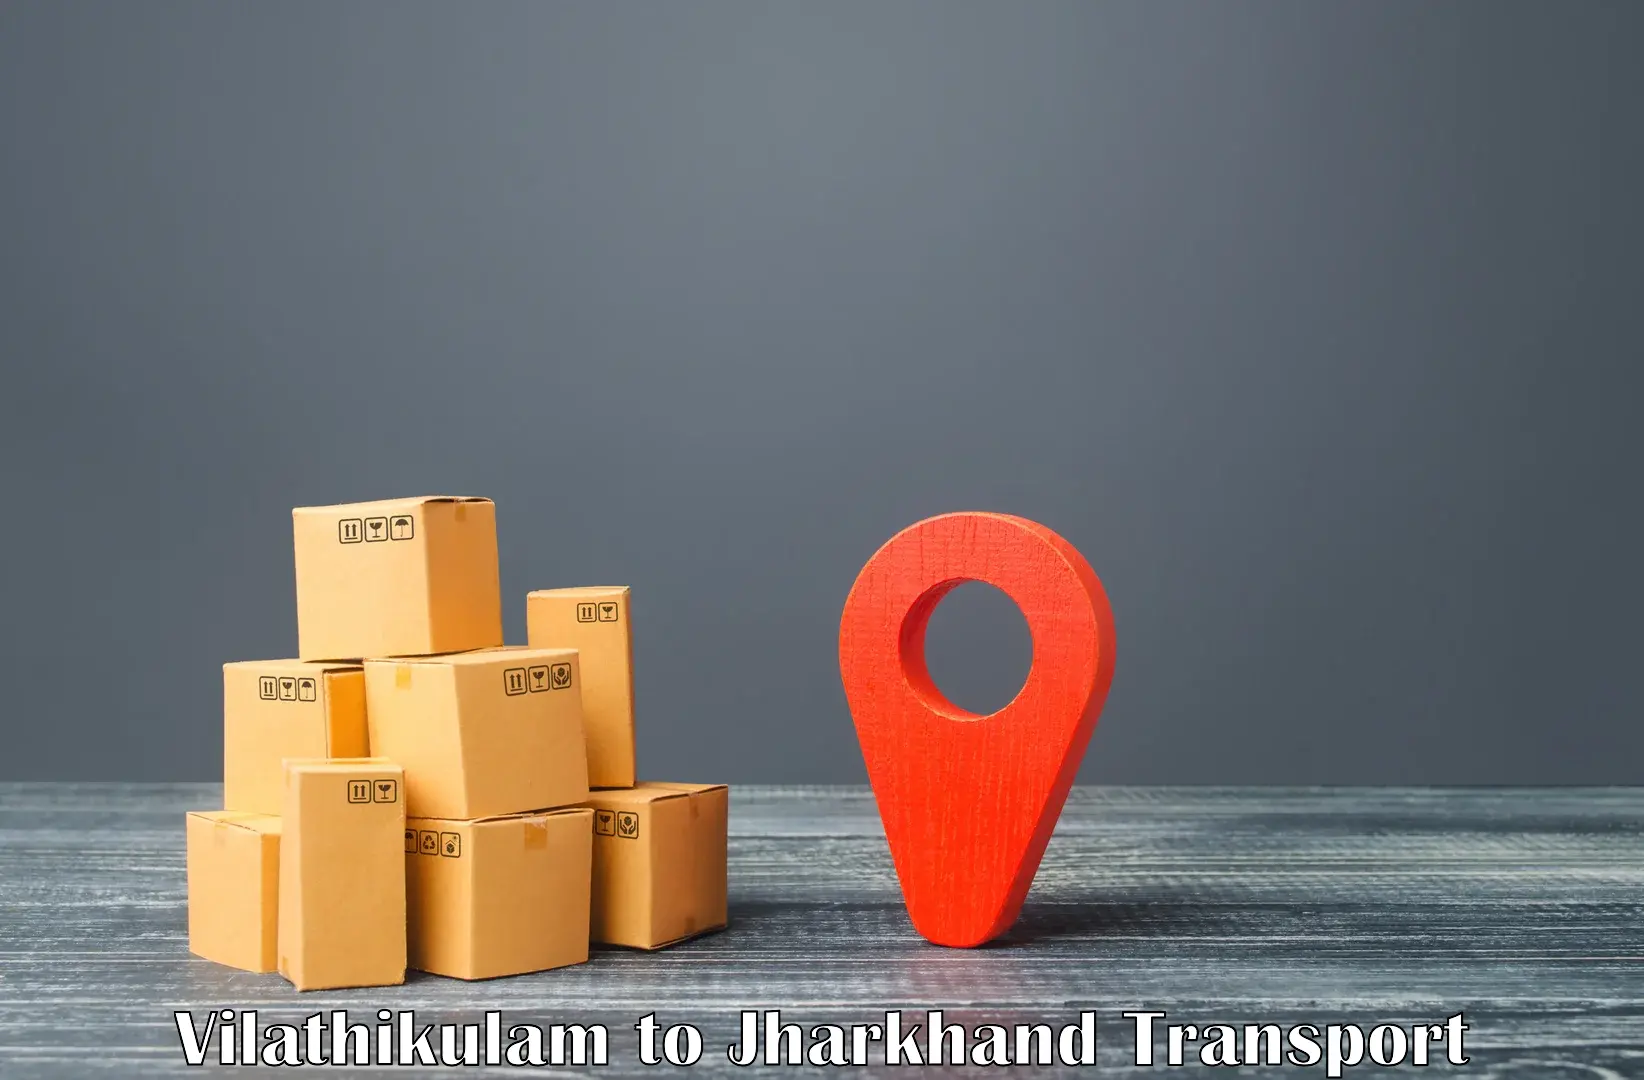 Road transport online services Vilathikulam to Kedla